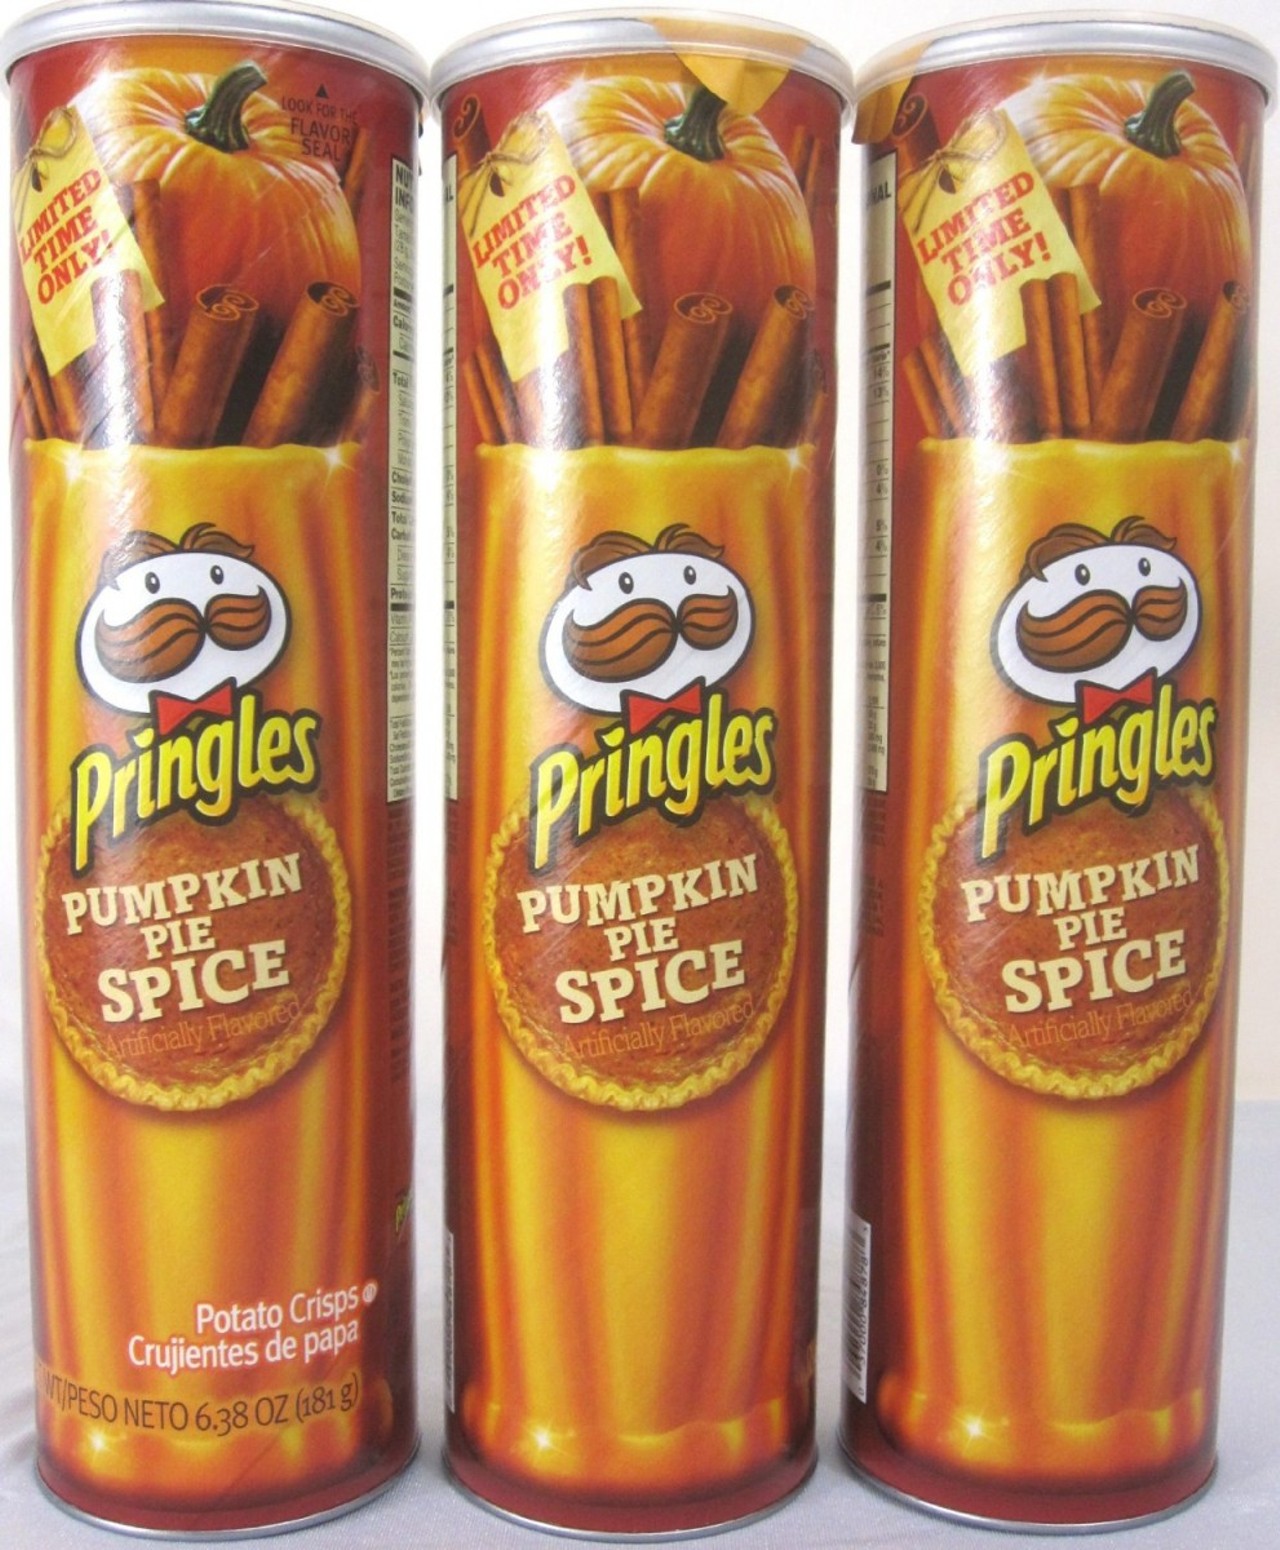 Pumpkin Spice Pringles
Graphiti